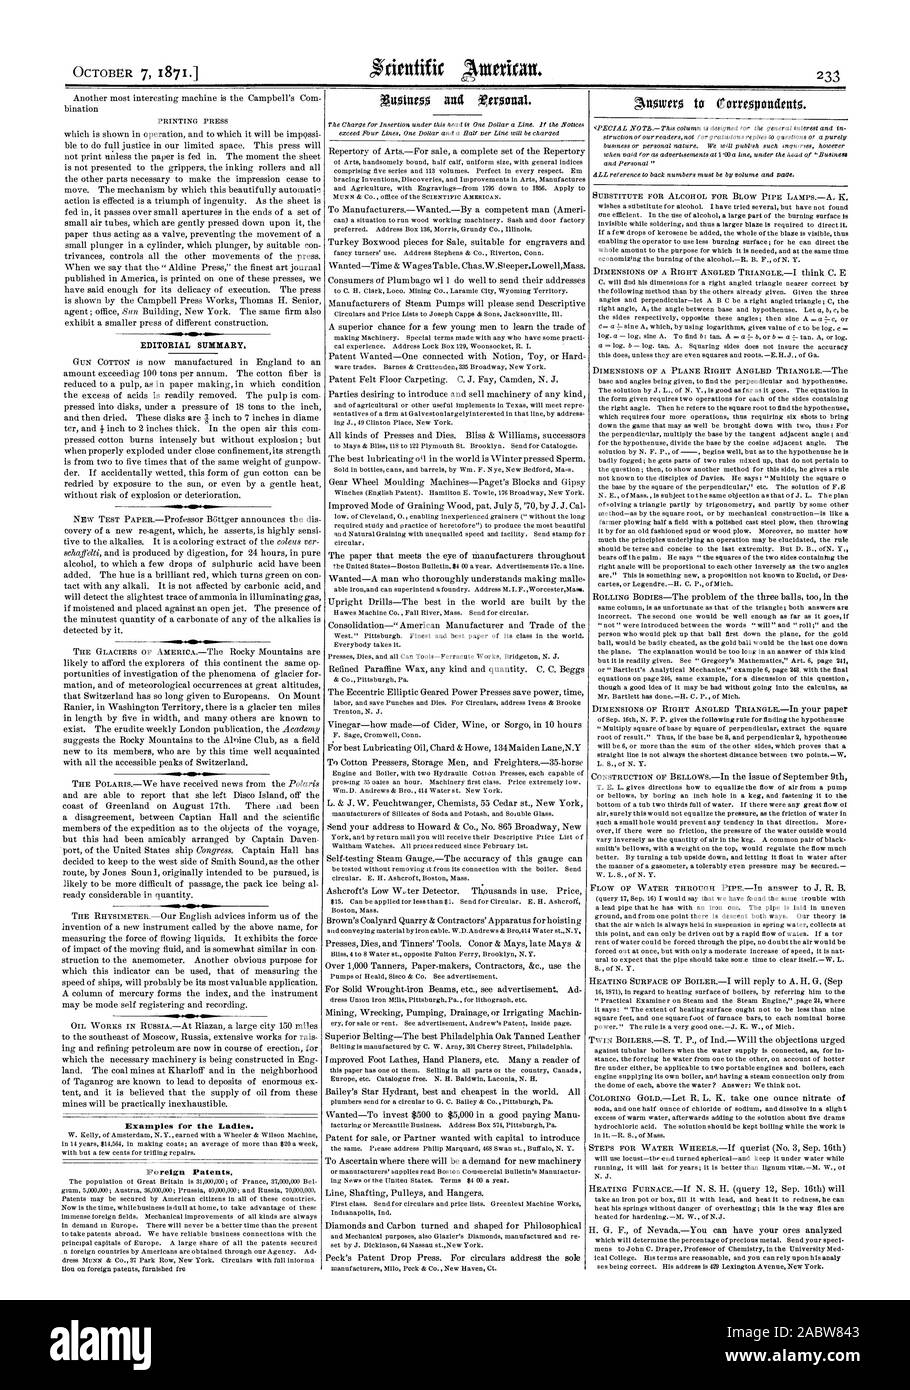 Sommario editoriale esempi per le signore. Brevetti stranieri., Scientific American, 1871-10-07 Foto Stock